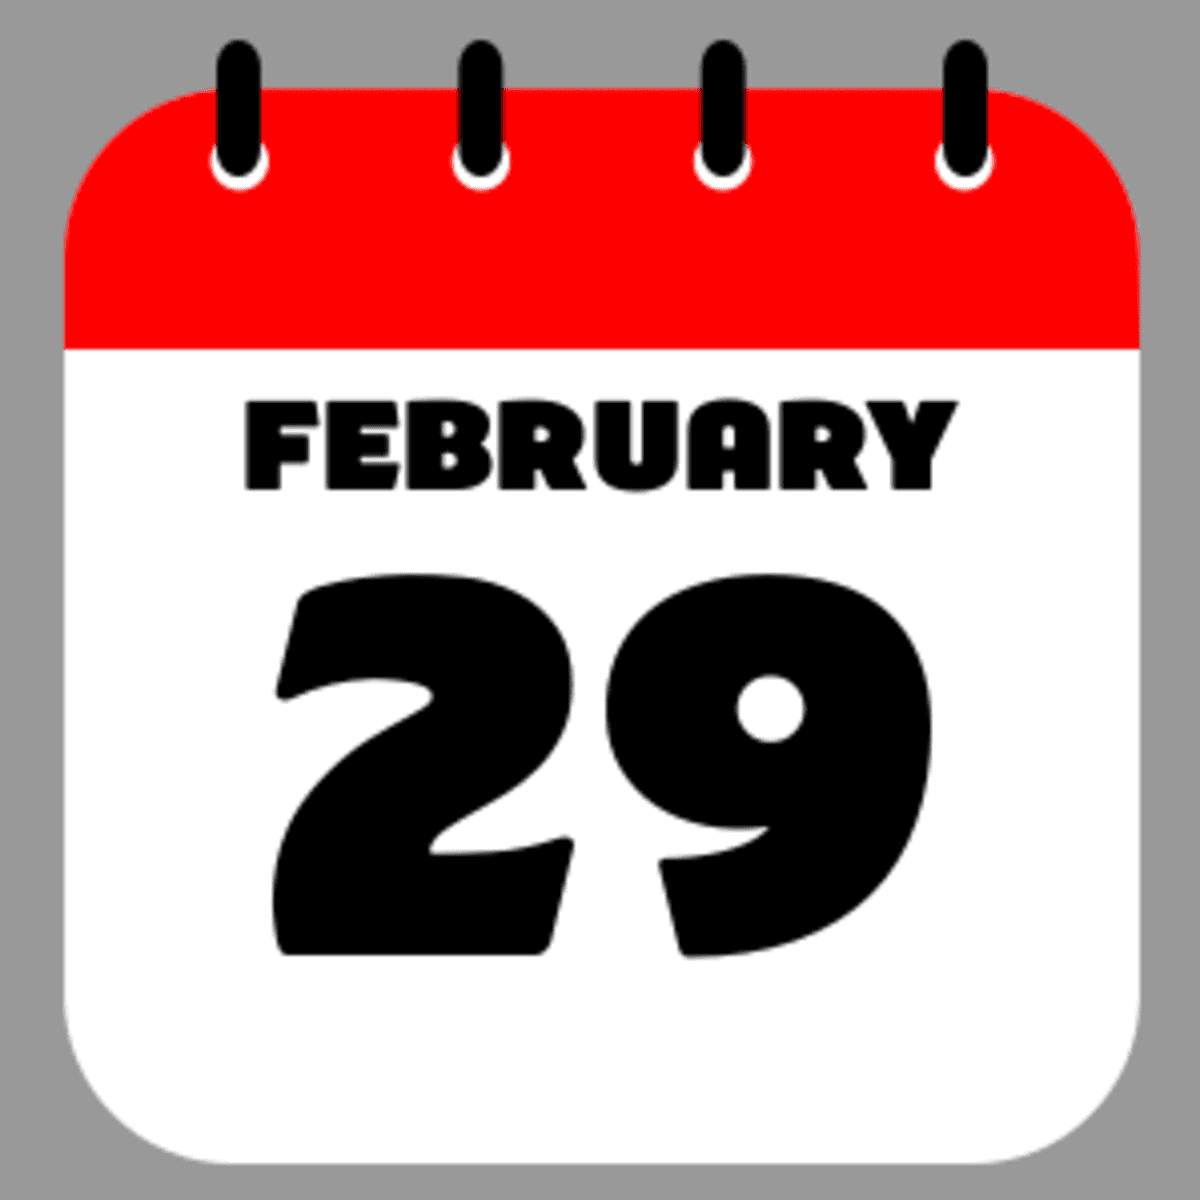 julian-date-calendar-leap-year-2022-clipart